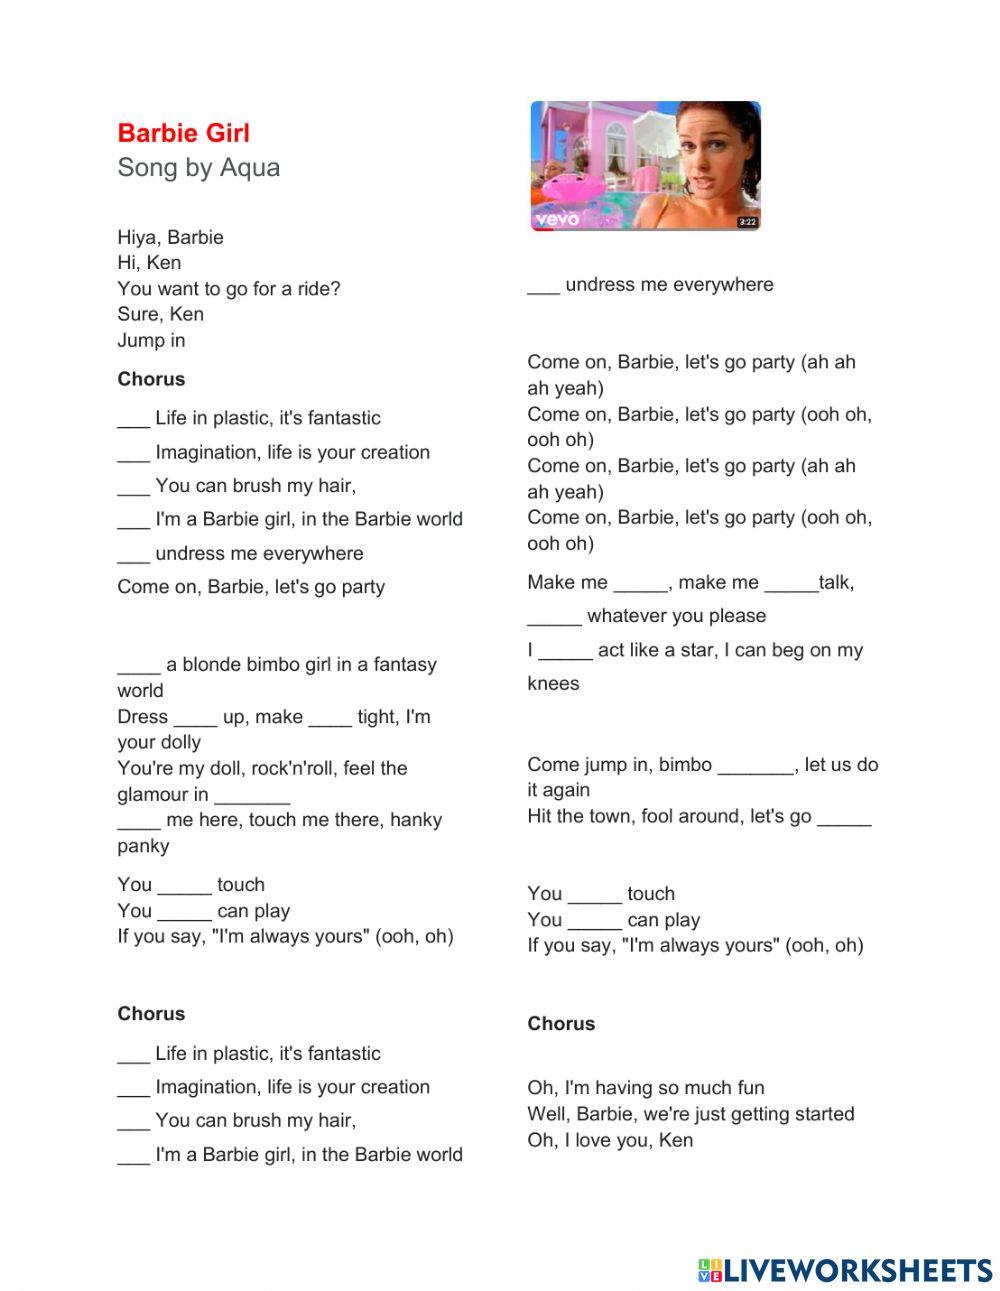 Barbie gril lyrics worksheet | Live Worksheets